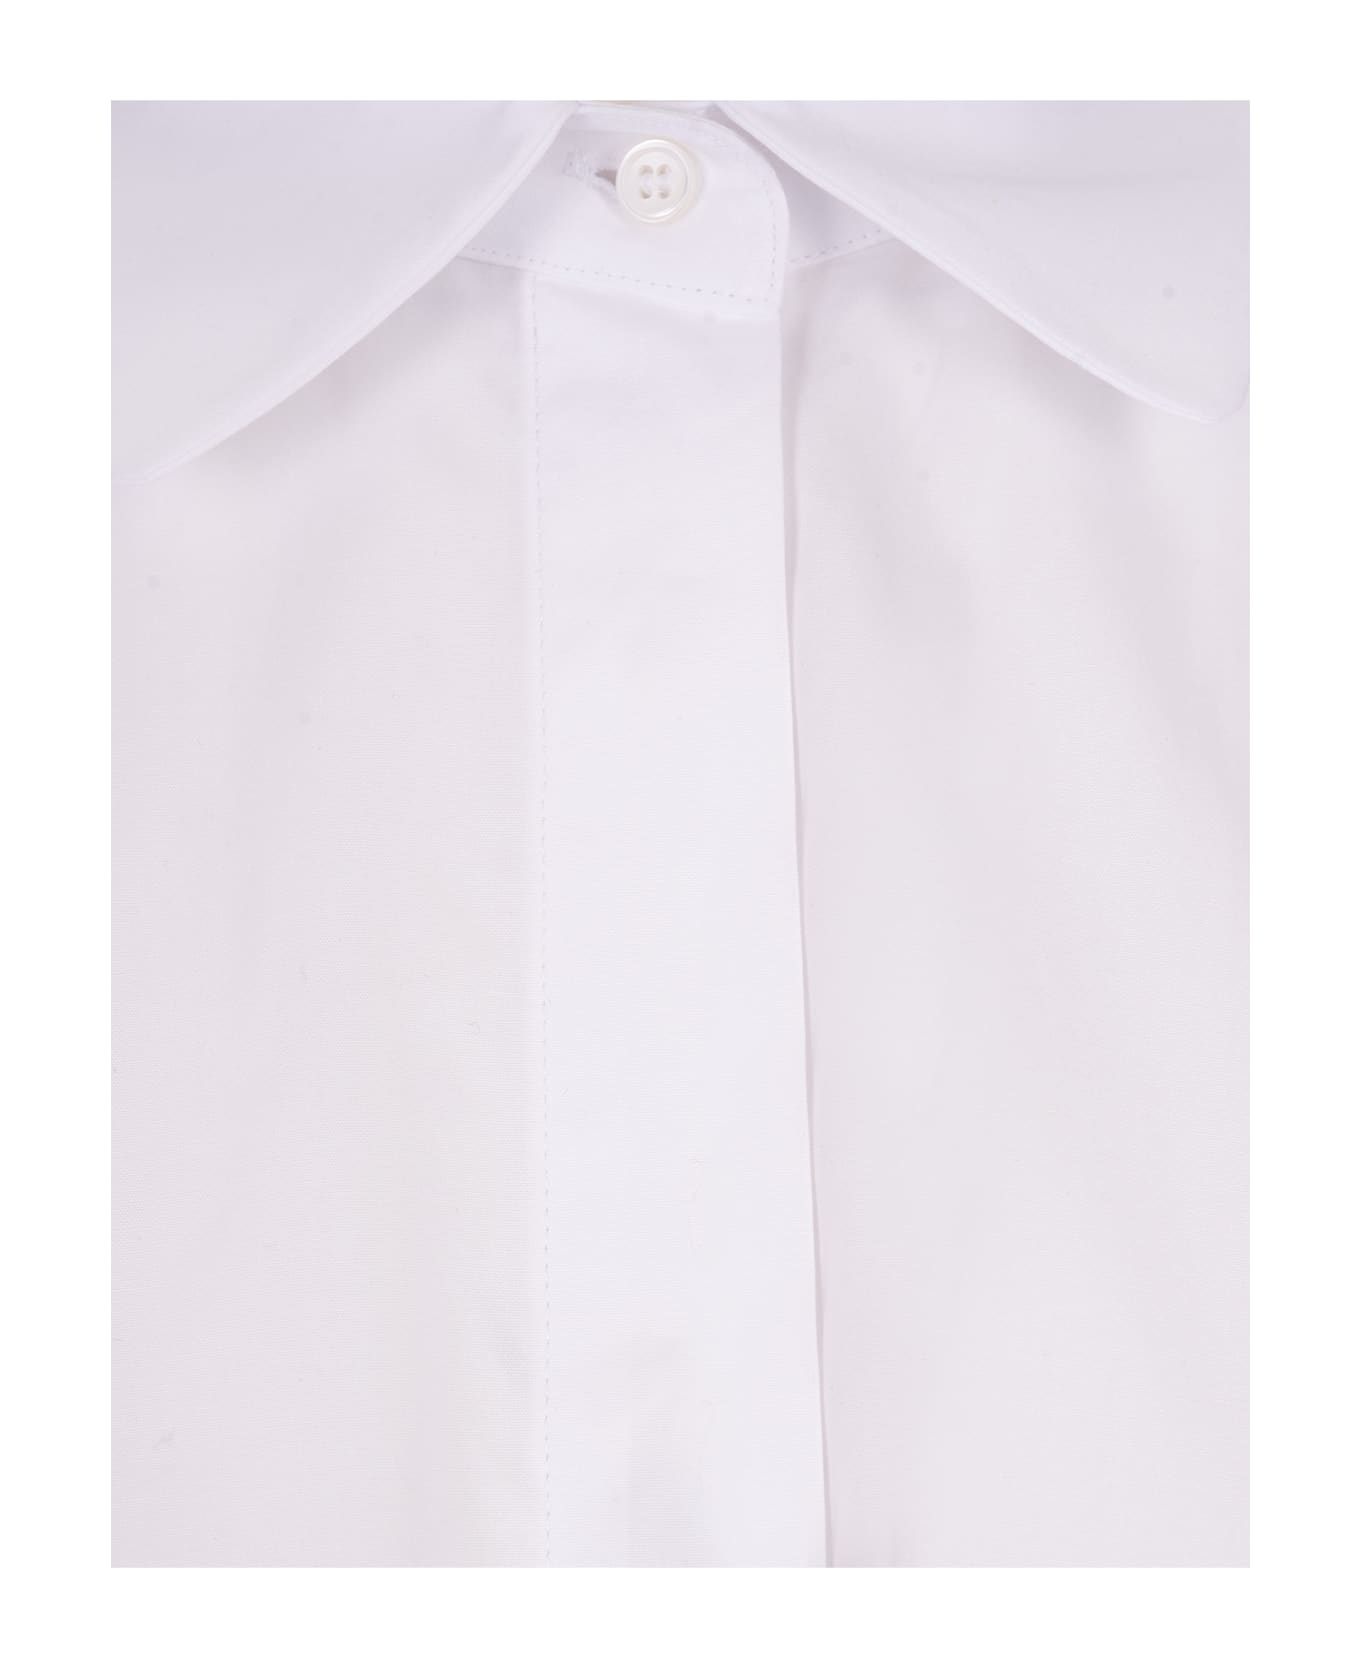 'S Max Mara White Tea Shirt - White シャツ